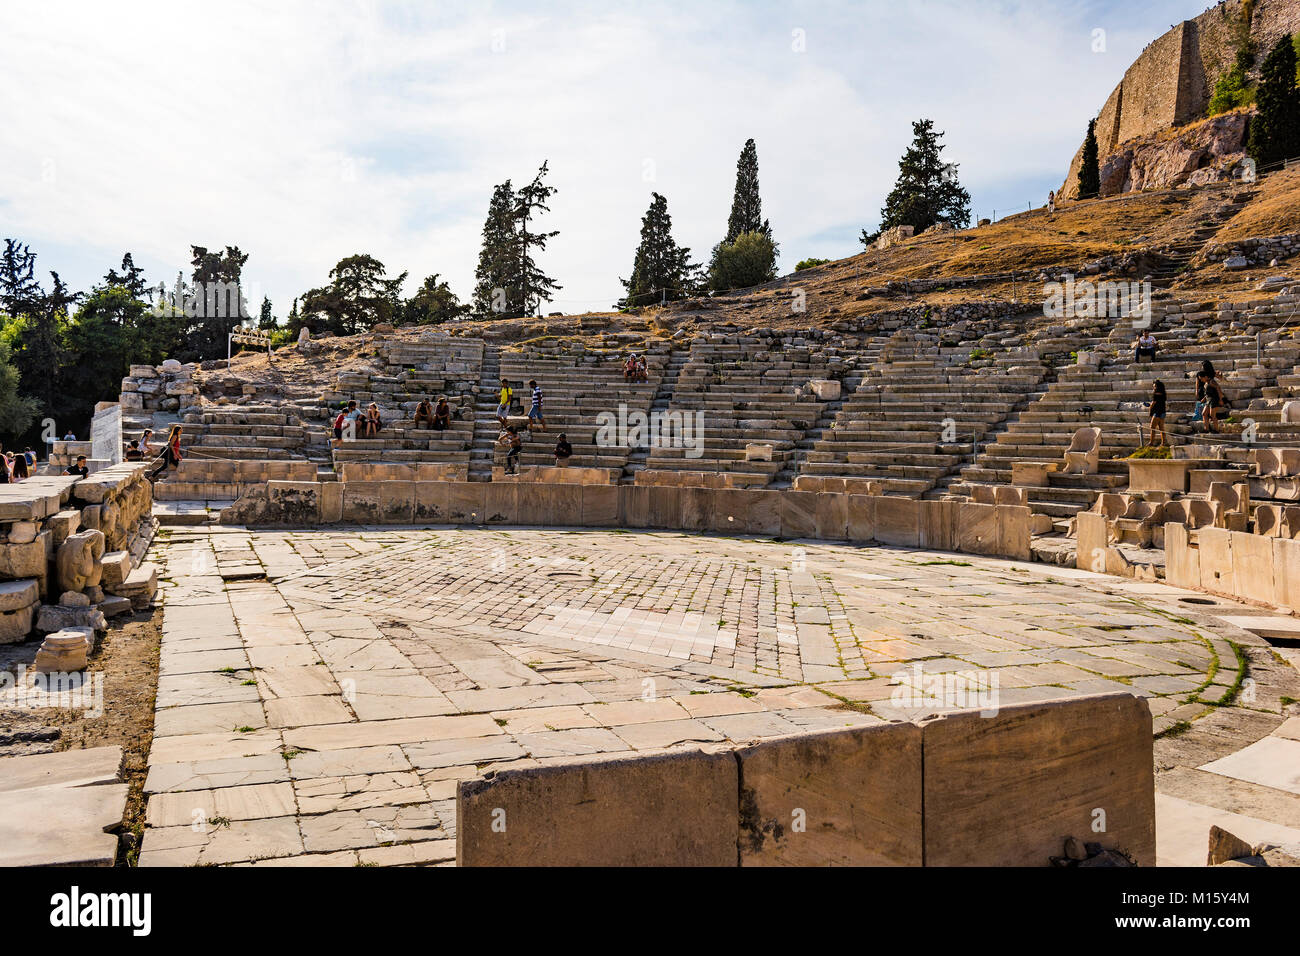 Athen, Griechenland, 24. SEPTEMBER 2017: Theater des Dionysos. Der große griechische Tragödien von Sophokles und Euripides wurden hier durchgeführt. Stockfoto